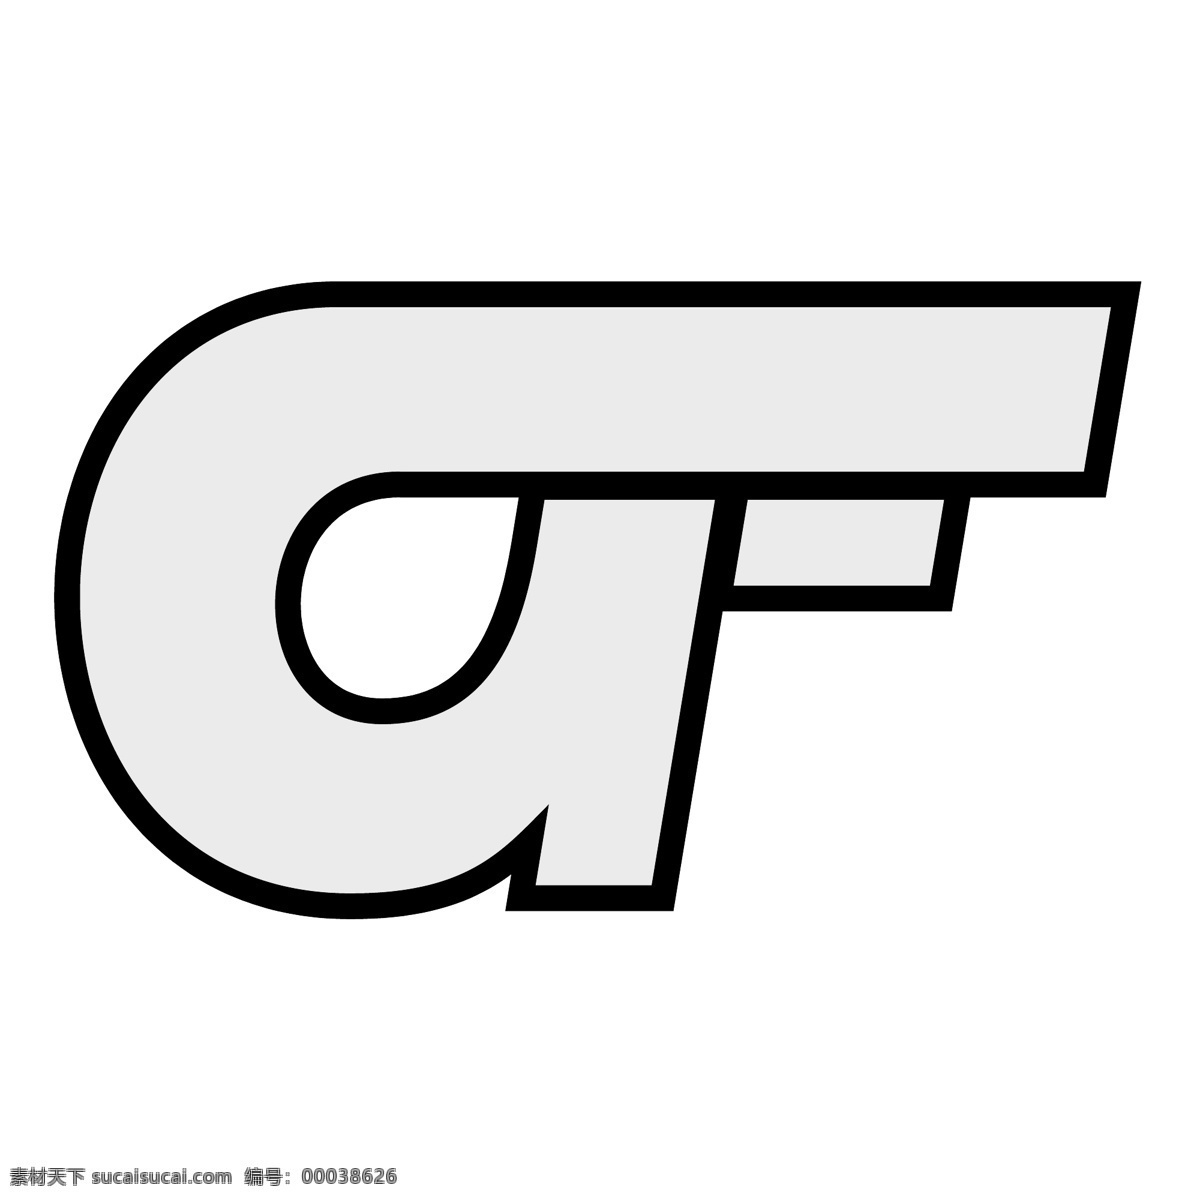 gif 矢量标志下载 免费矢量标识 商标 品牌标识 标识 矢量 免费 品牌 公司 白色